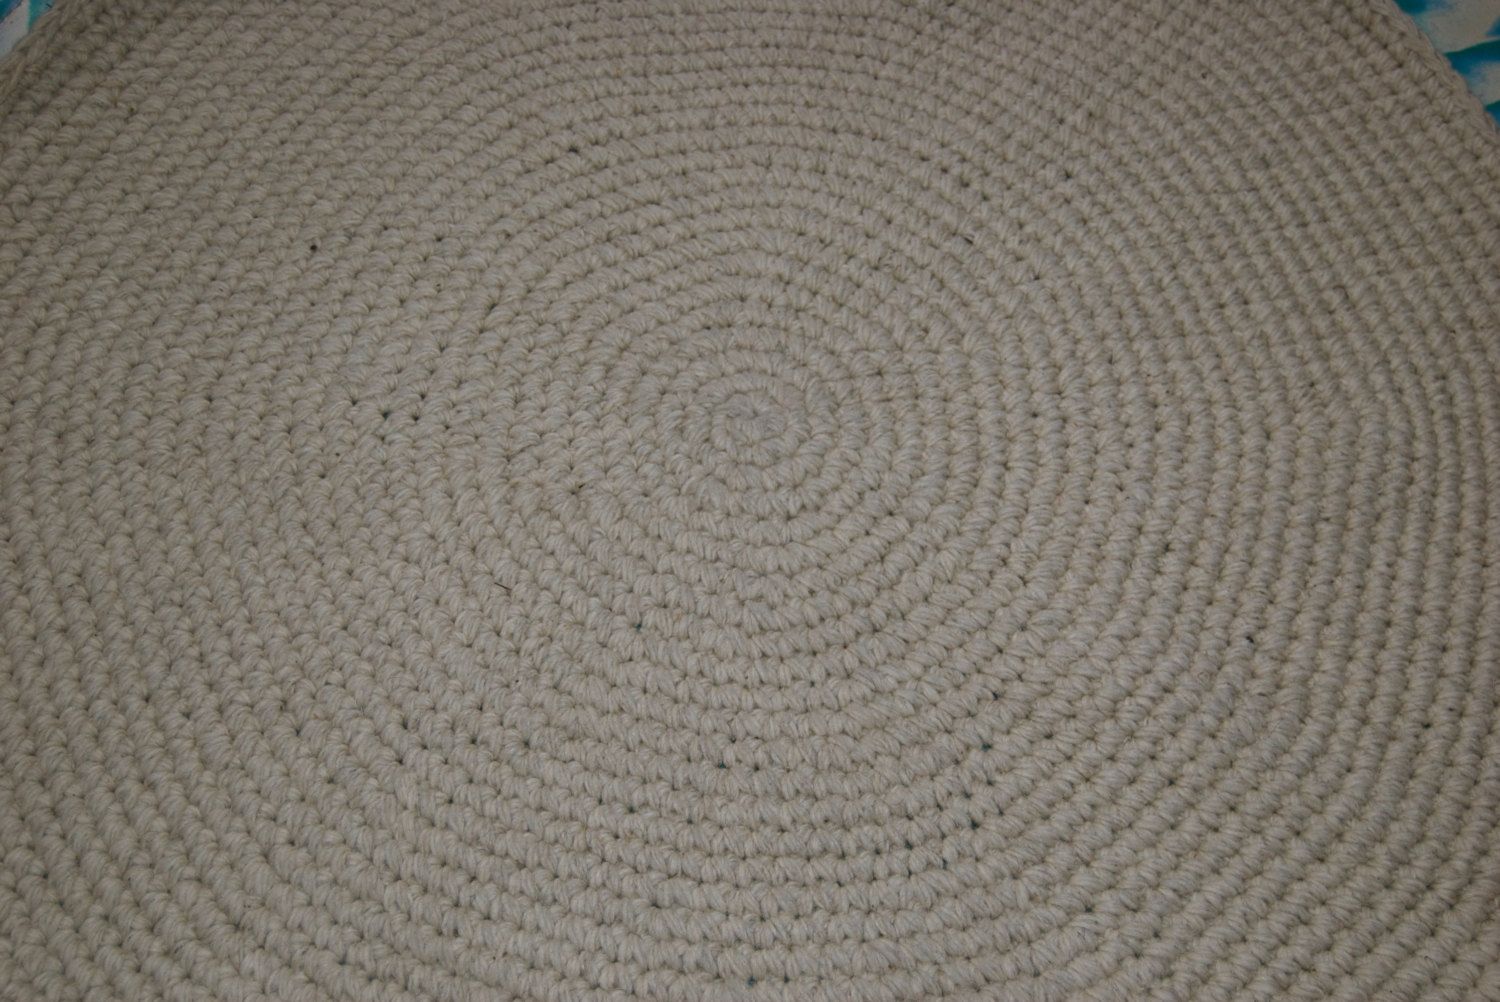 Circular Wool Rugs Roselawnlutheran Regarding Circular Wool Rugs (View 1 of 15)